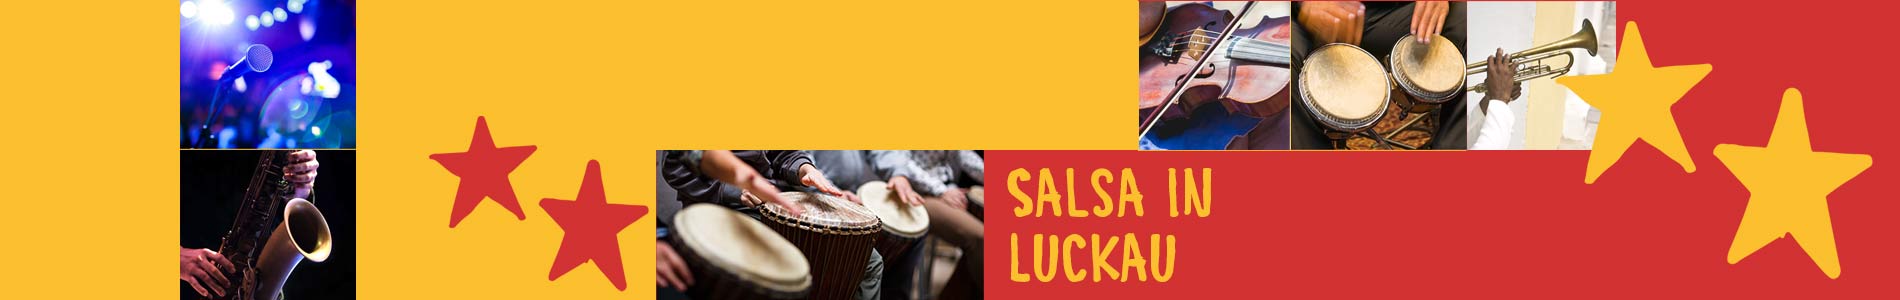 Salsa in Luckau – Salsa lernen und tanzen, Tanzkurse, Partys, Veranstaltungen